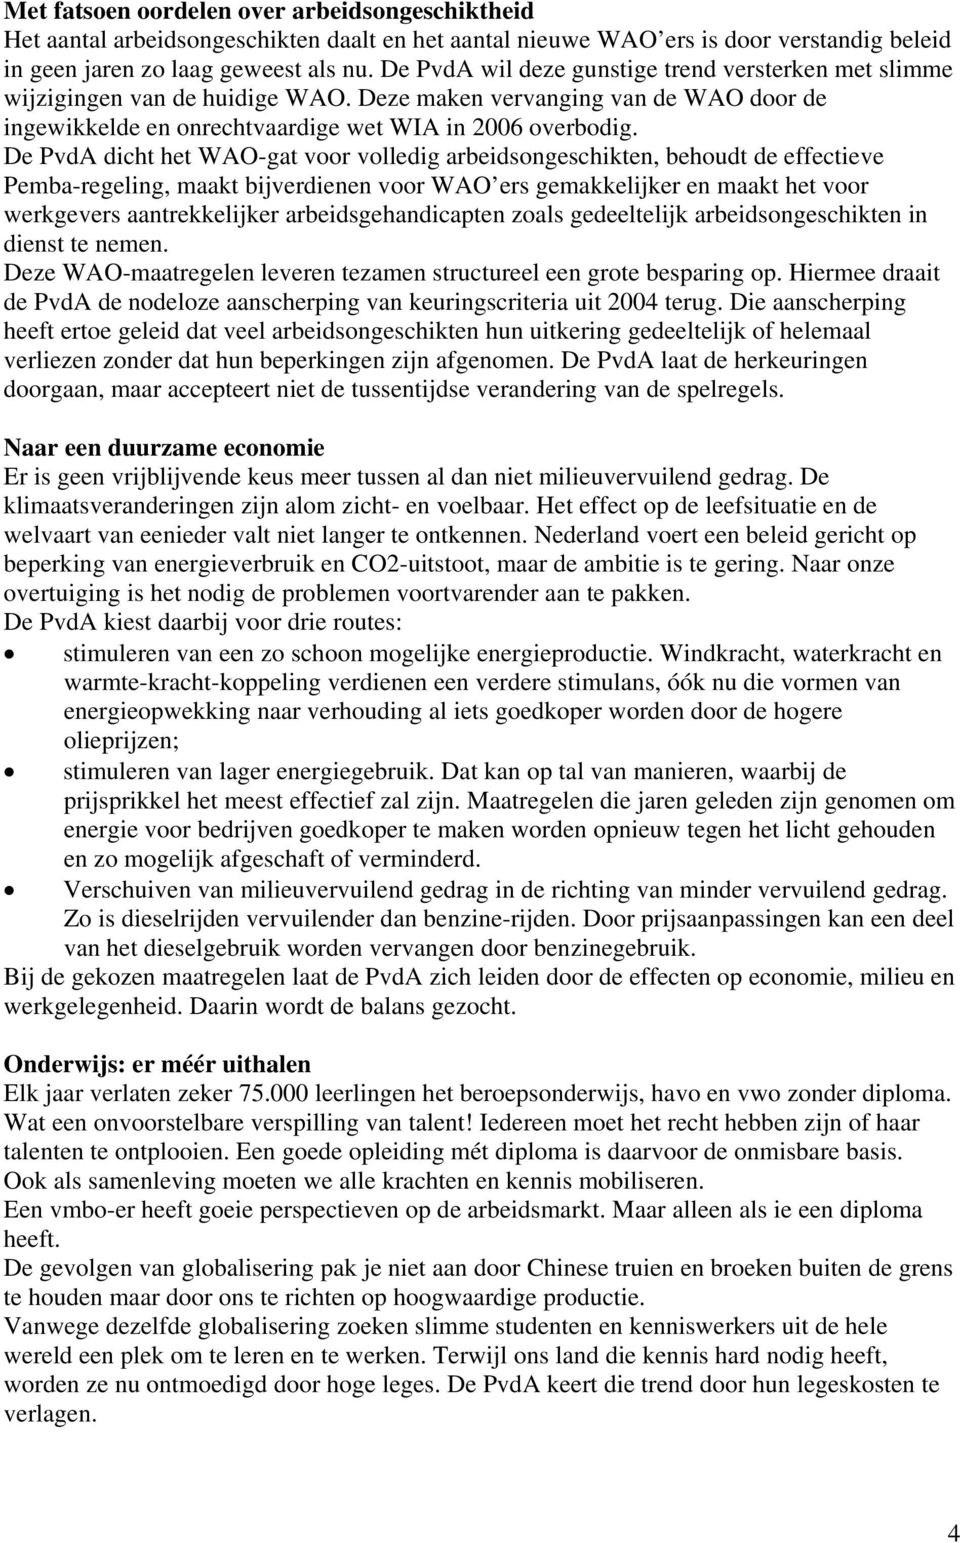 De PvdA dicht het WAO-gat voor volledig arbeidsongeschikten, behoudt de effectieve Pemba-regeling, maakt bijverdienen voor WAO ers gemakkelijker en maakt het voor werkgevers aantrekkelijker